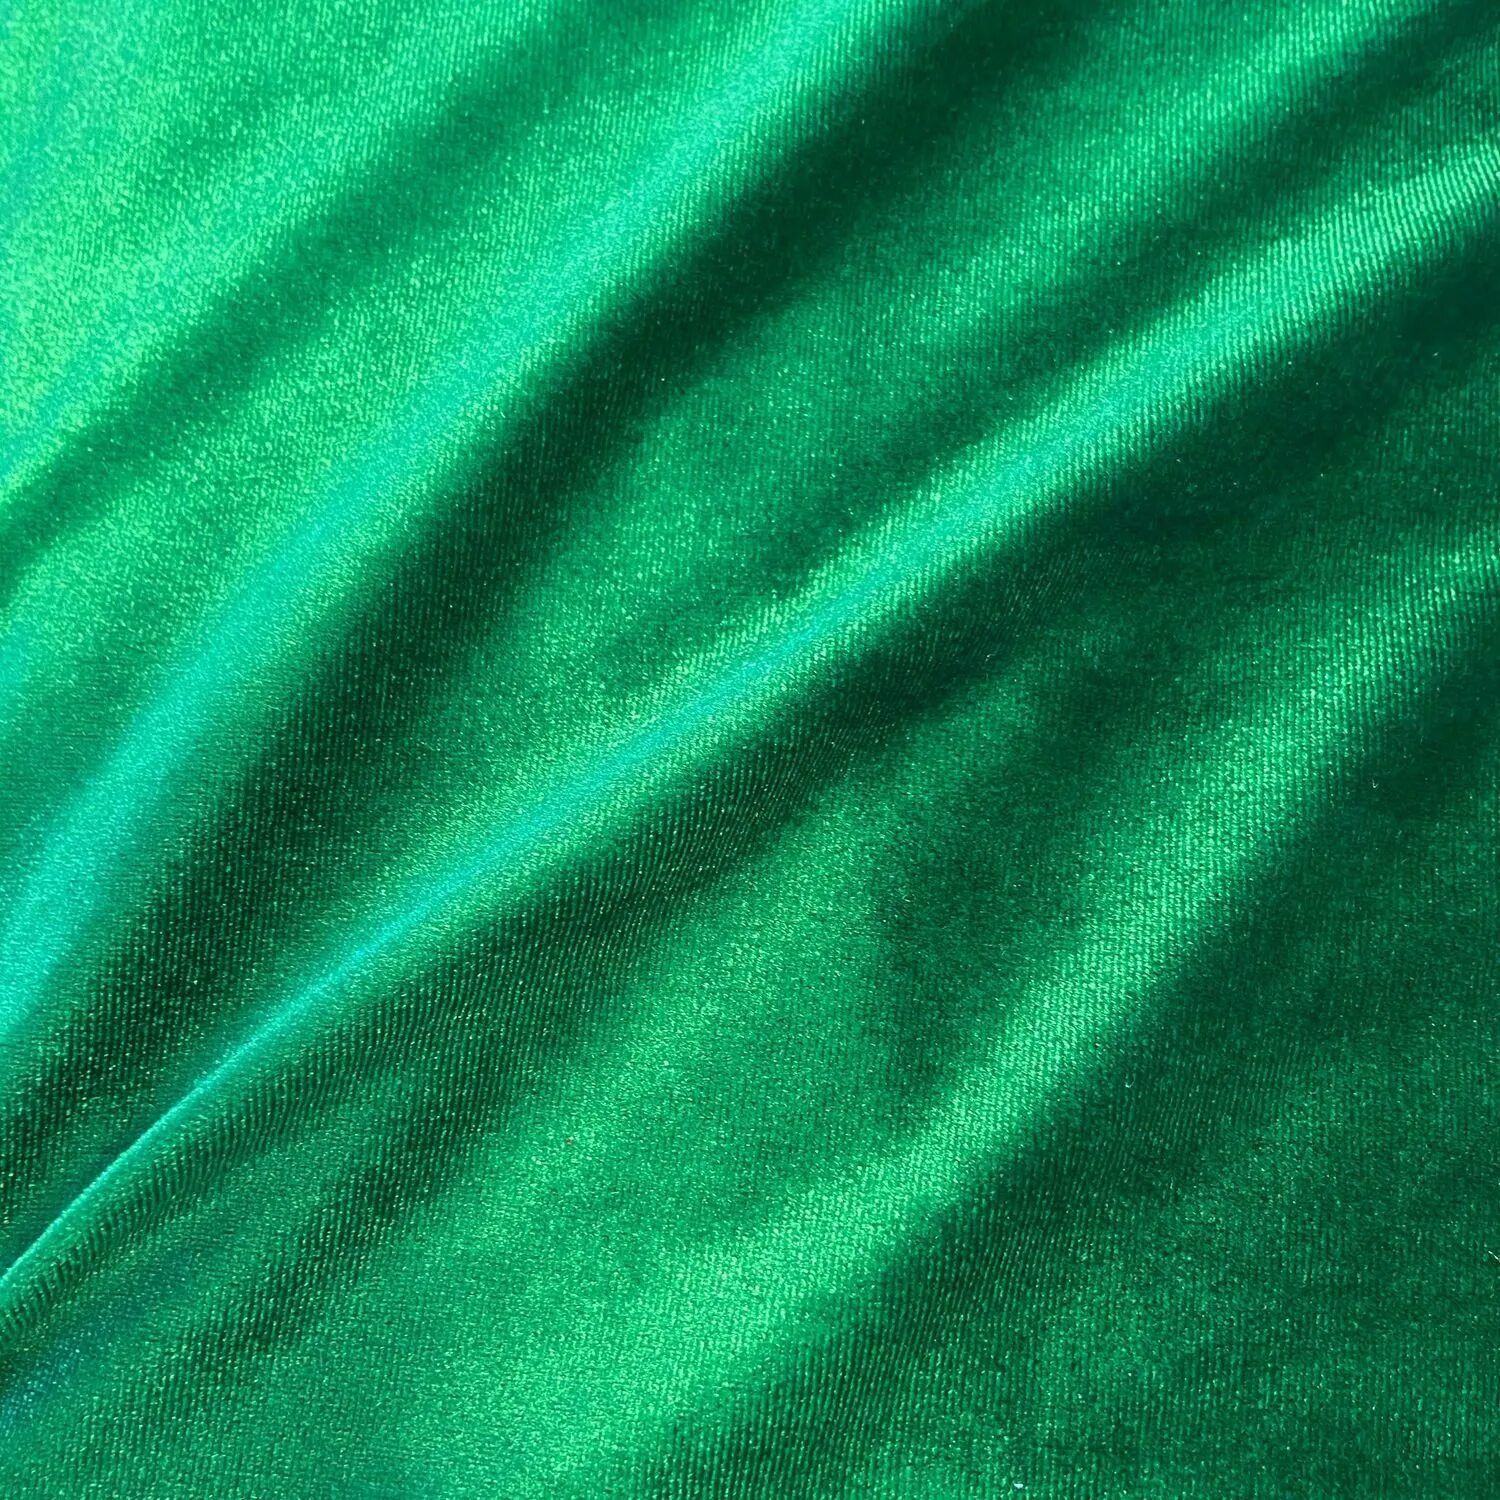 Т б зеленая. Вельвет ткань изумруд. Драппировка изумрудный бархат. Бархат темно-зеленый t32lux. Ткань бархат изумруд.